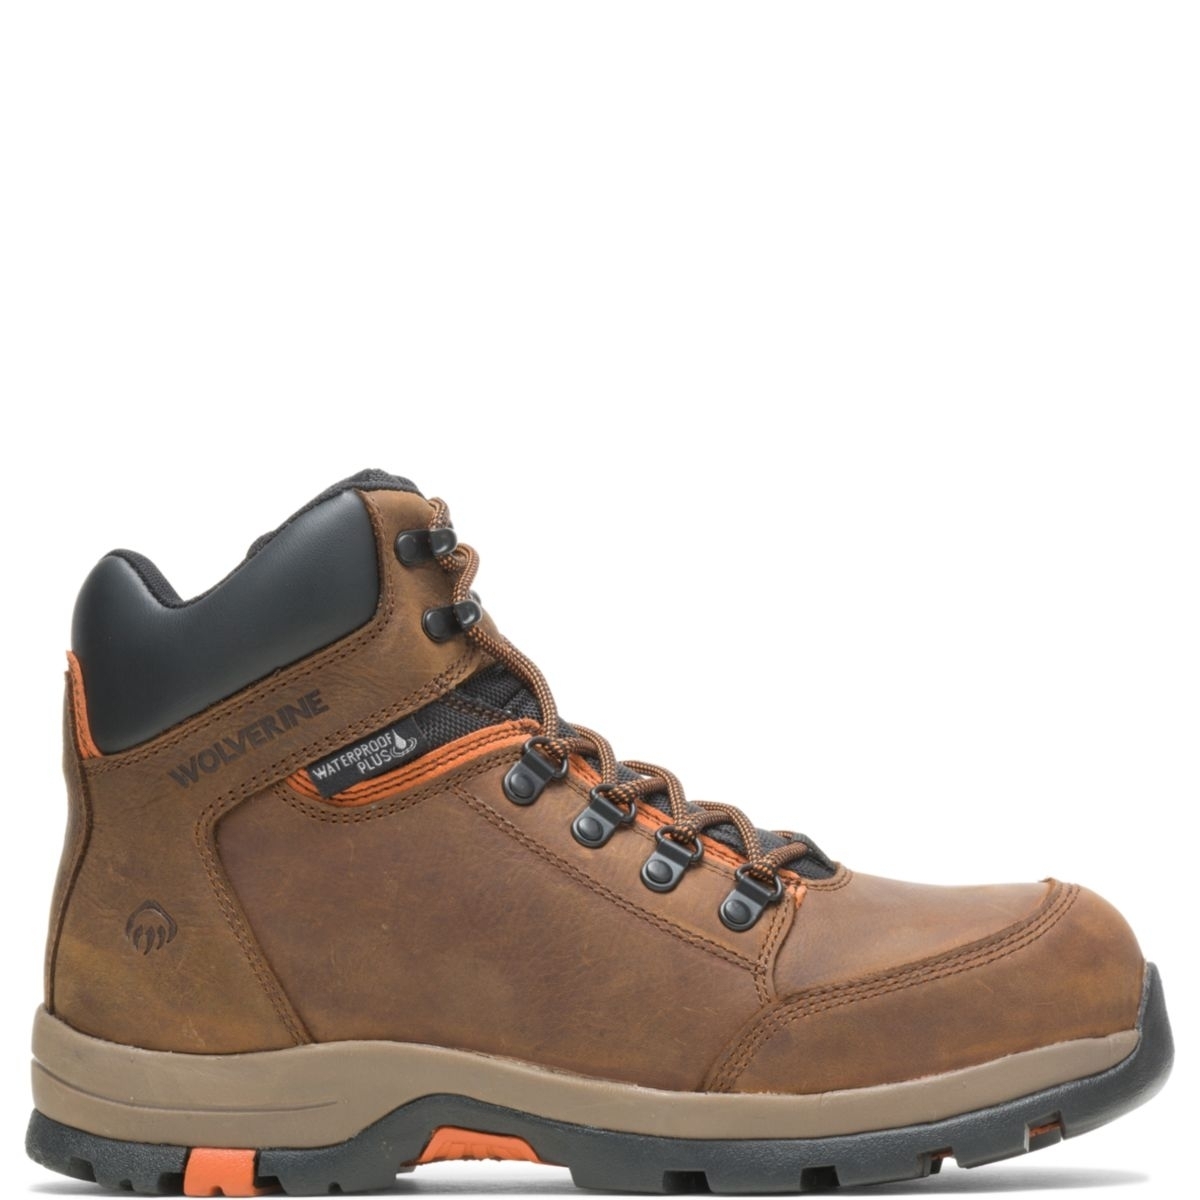 WOLVERINE Men's Grayson Steel Toe Waterproof Work Boot Brown - W211043 BROWN - BROWN, 10.5 X-Wide